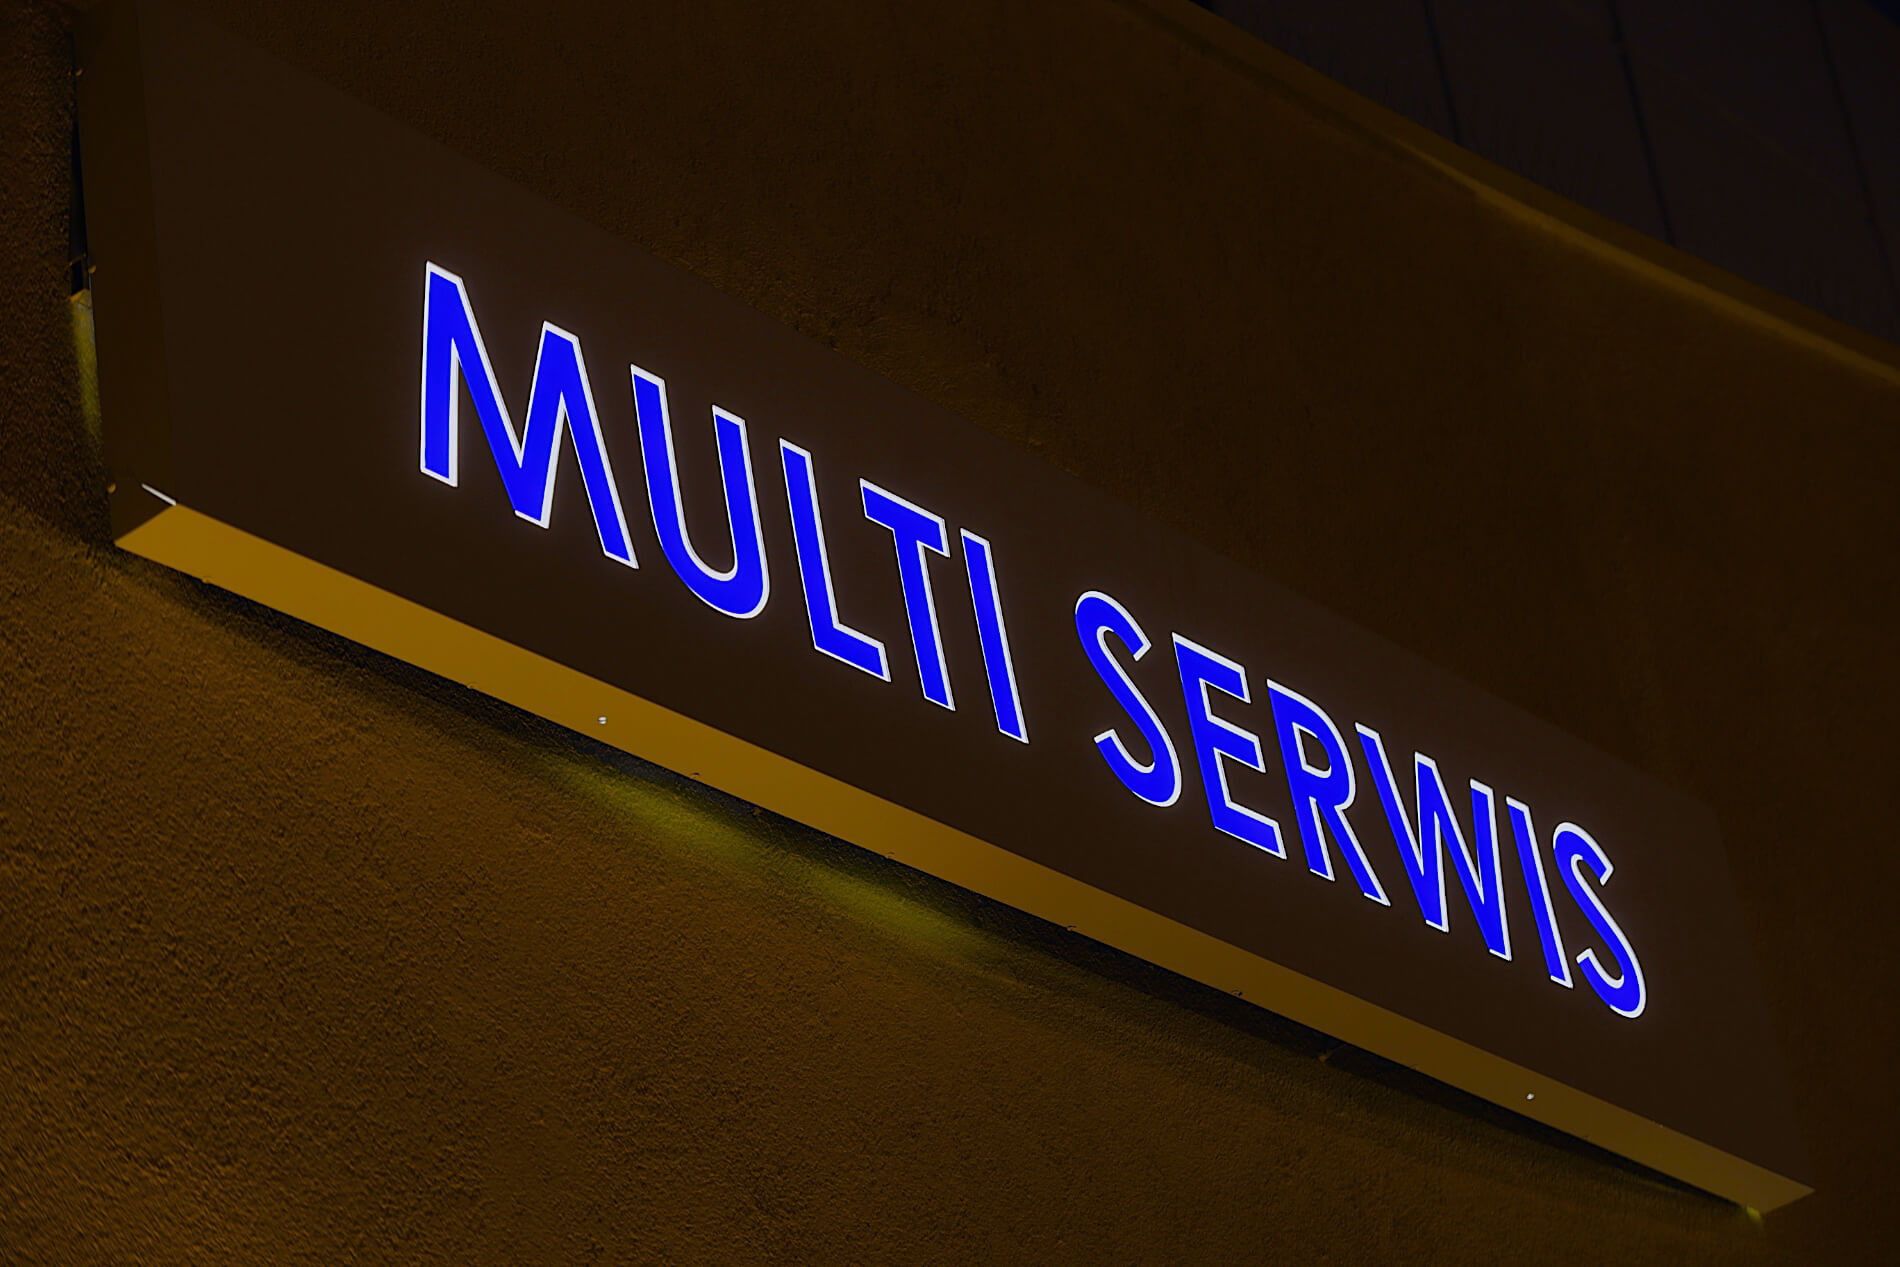 Gajos service - Gajos Serwis - caisson lumineux avec le nom de la société, lettres illuminées par une feuille translucide